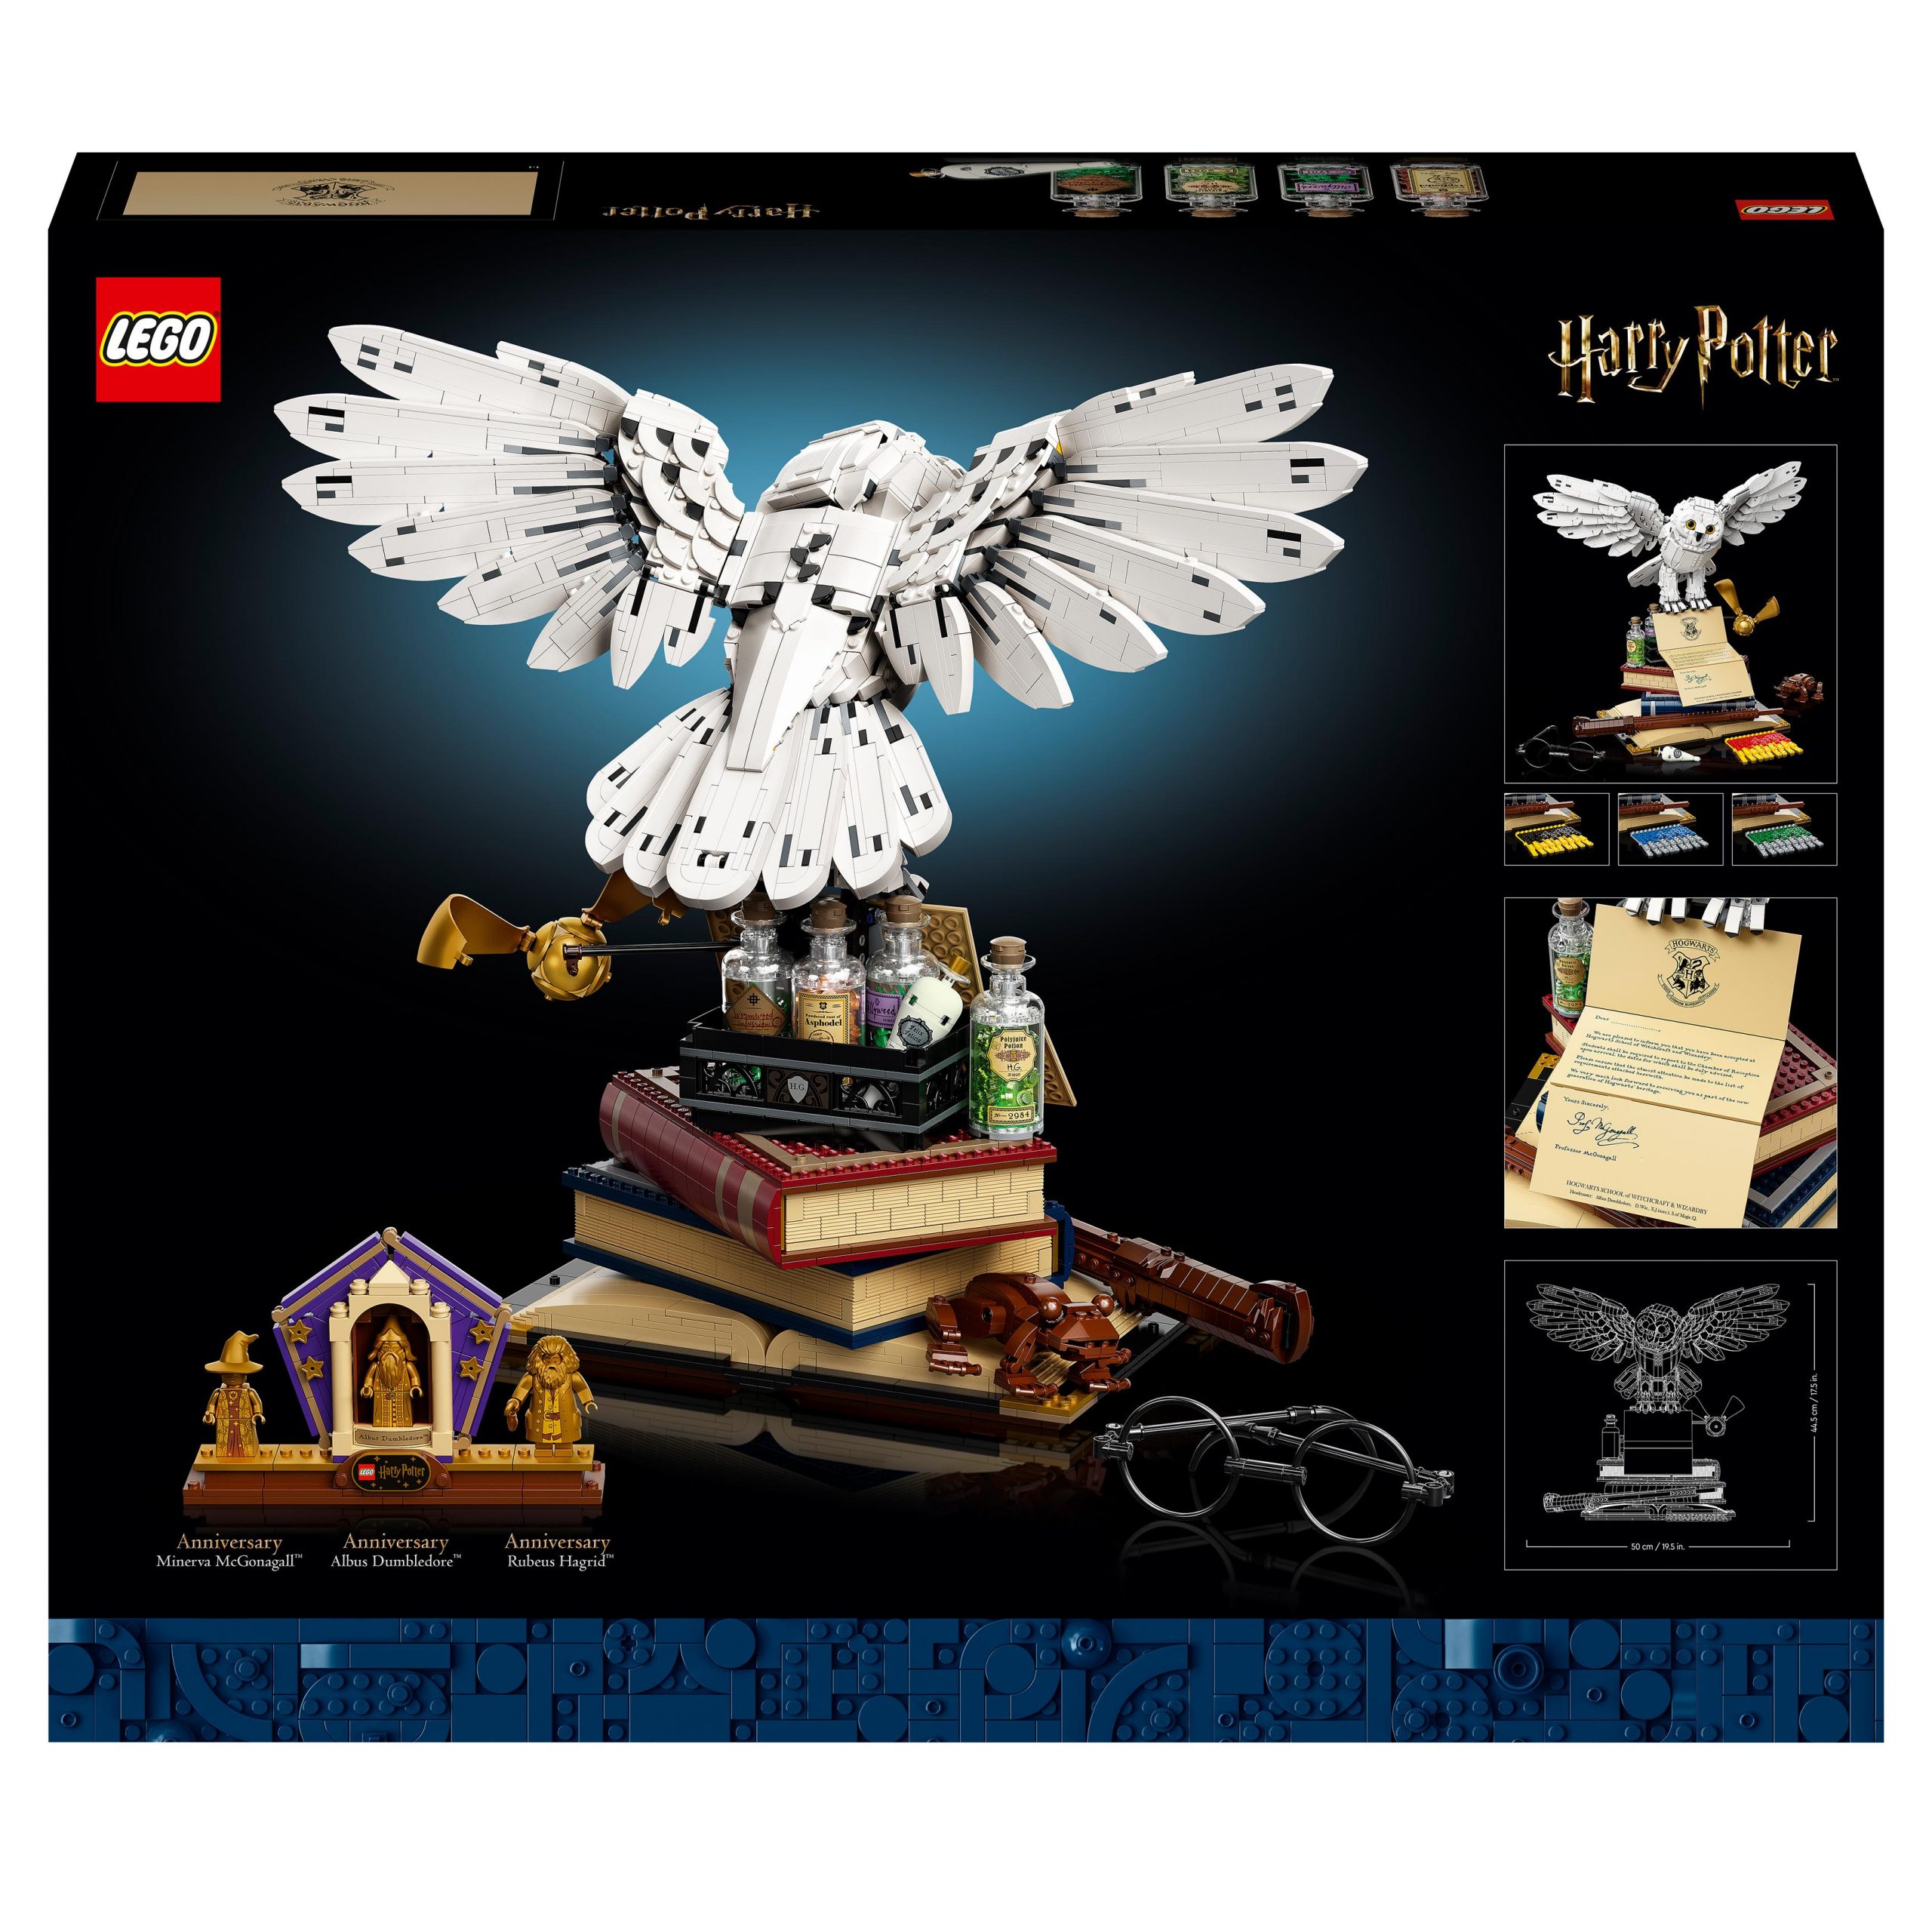 LEGO Harry Potter Edvige, Set da Costruire della Civetta delle Nevi  Giocattolo per Bambini, Bambine, Ragazzi e Ragazze, Gadget Esclusivo da  Collezione